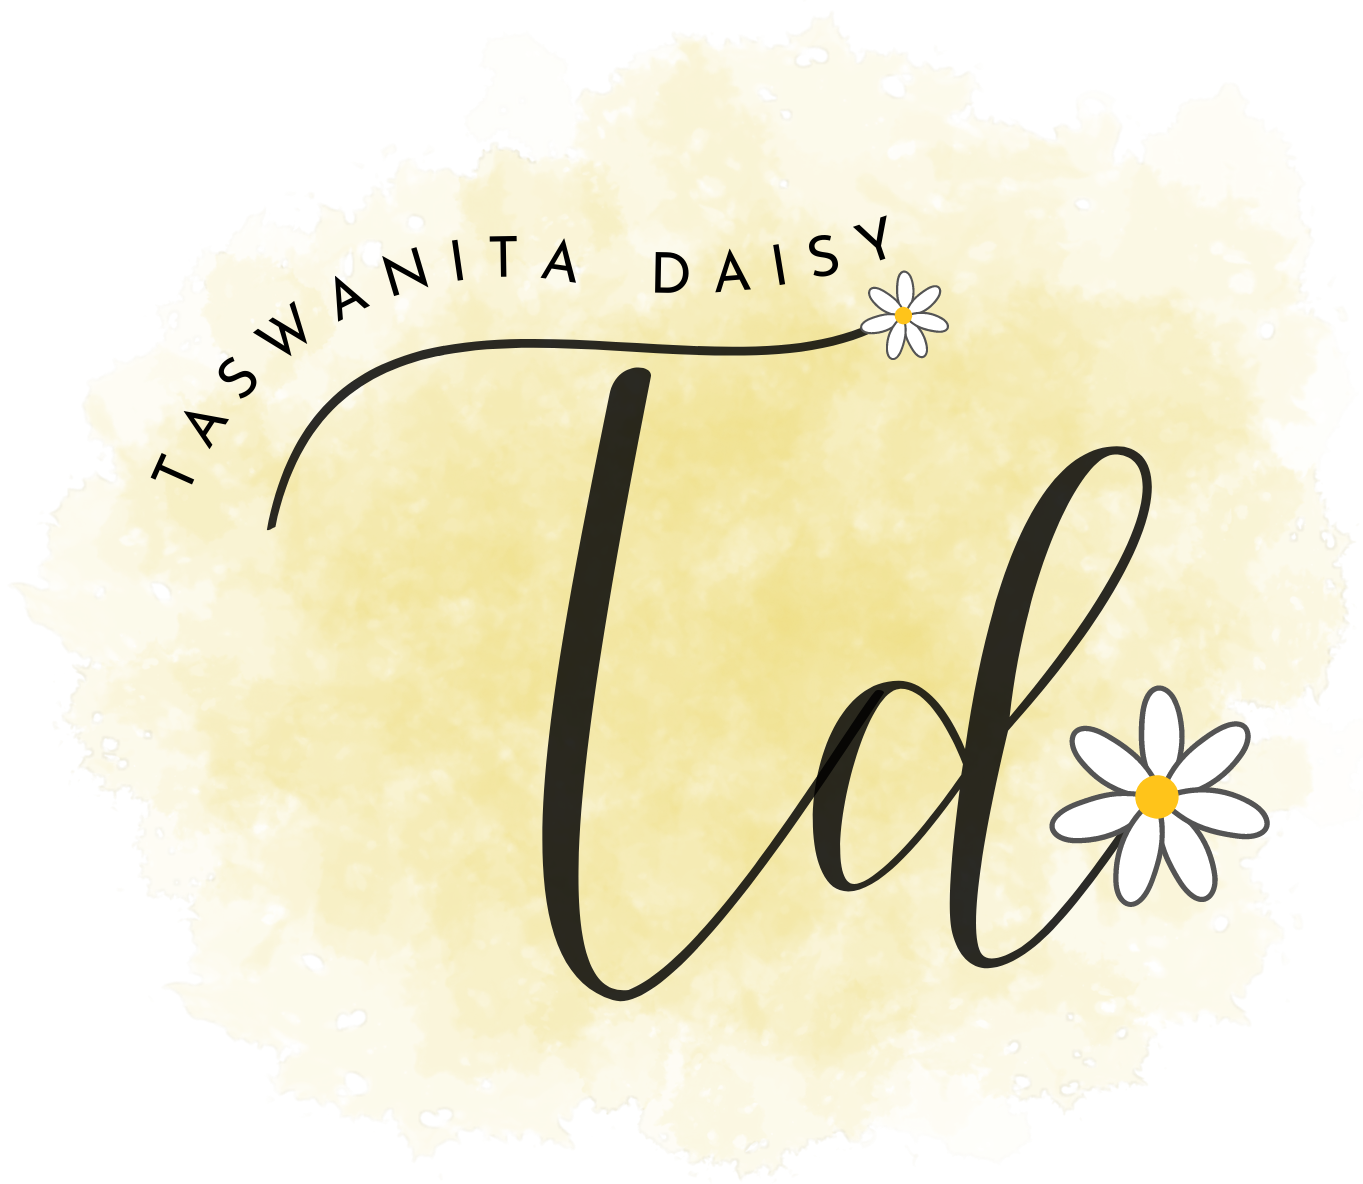 Taswanita Daisy